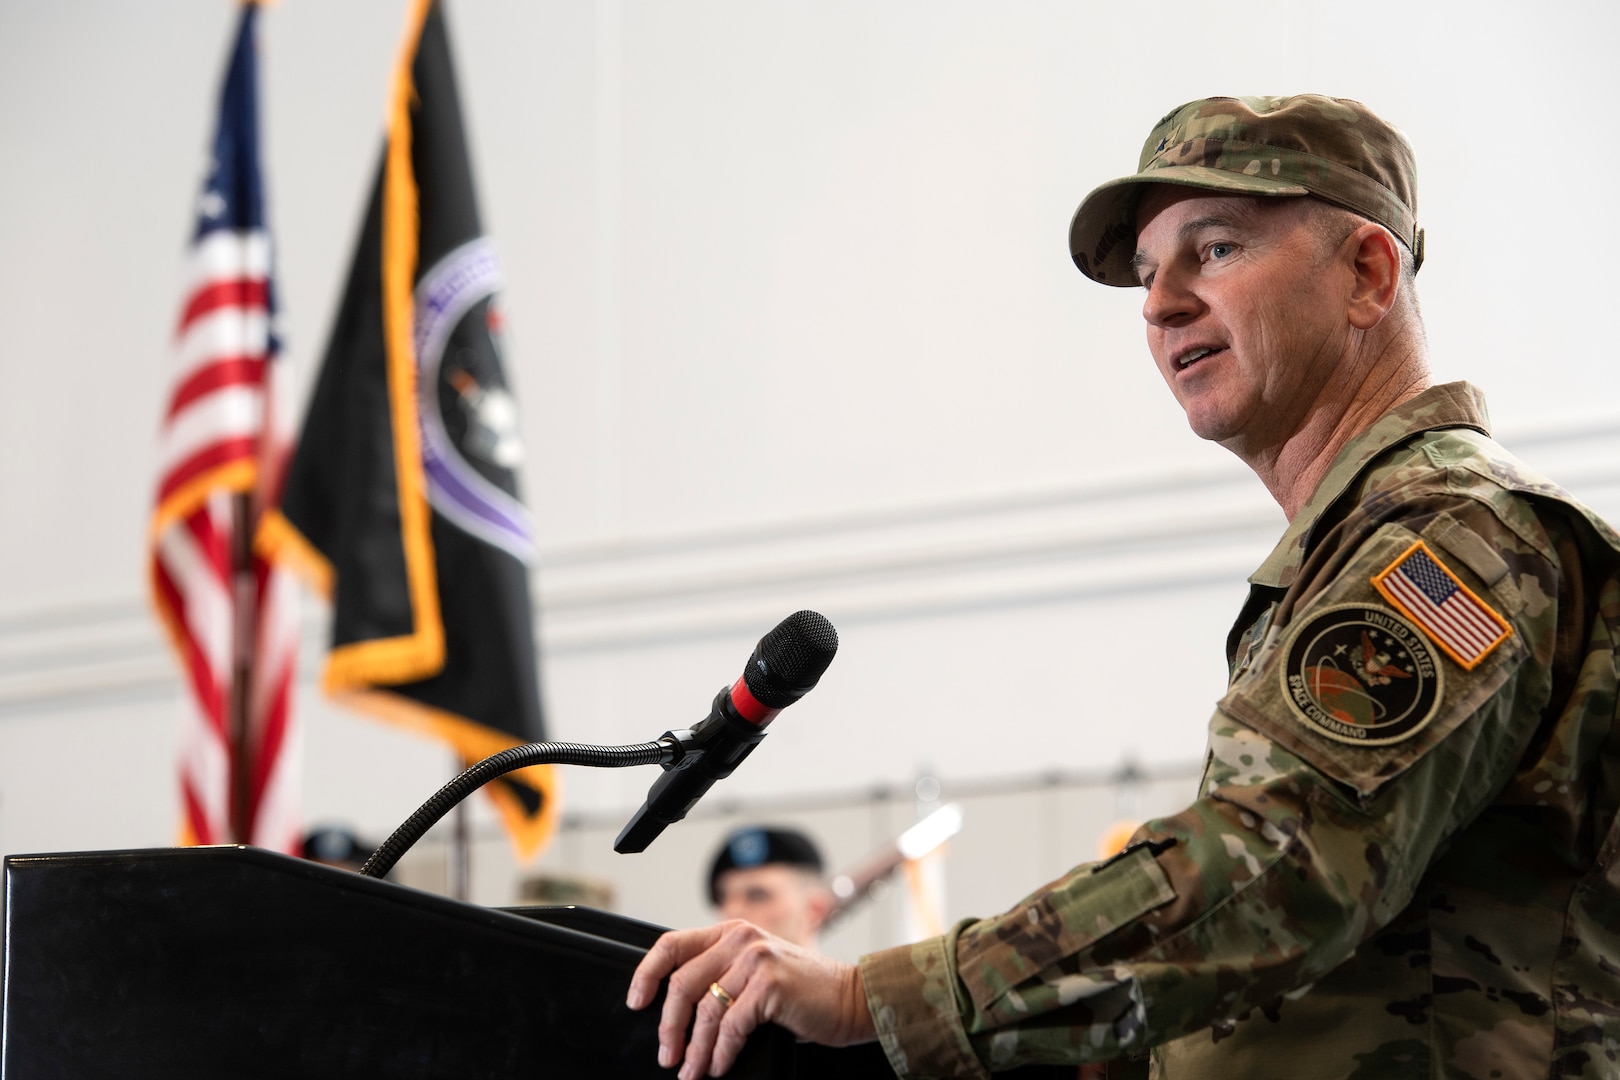 Man in military uniform speaking at podium